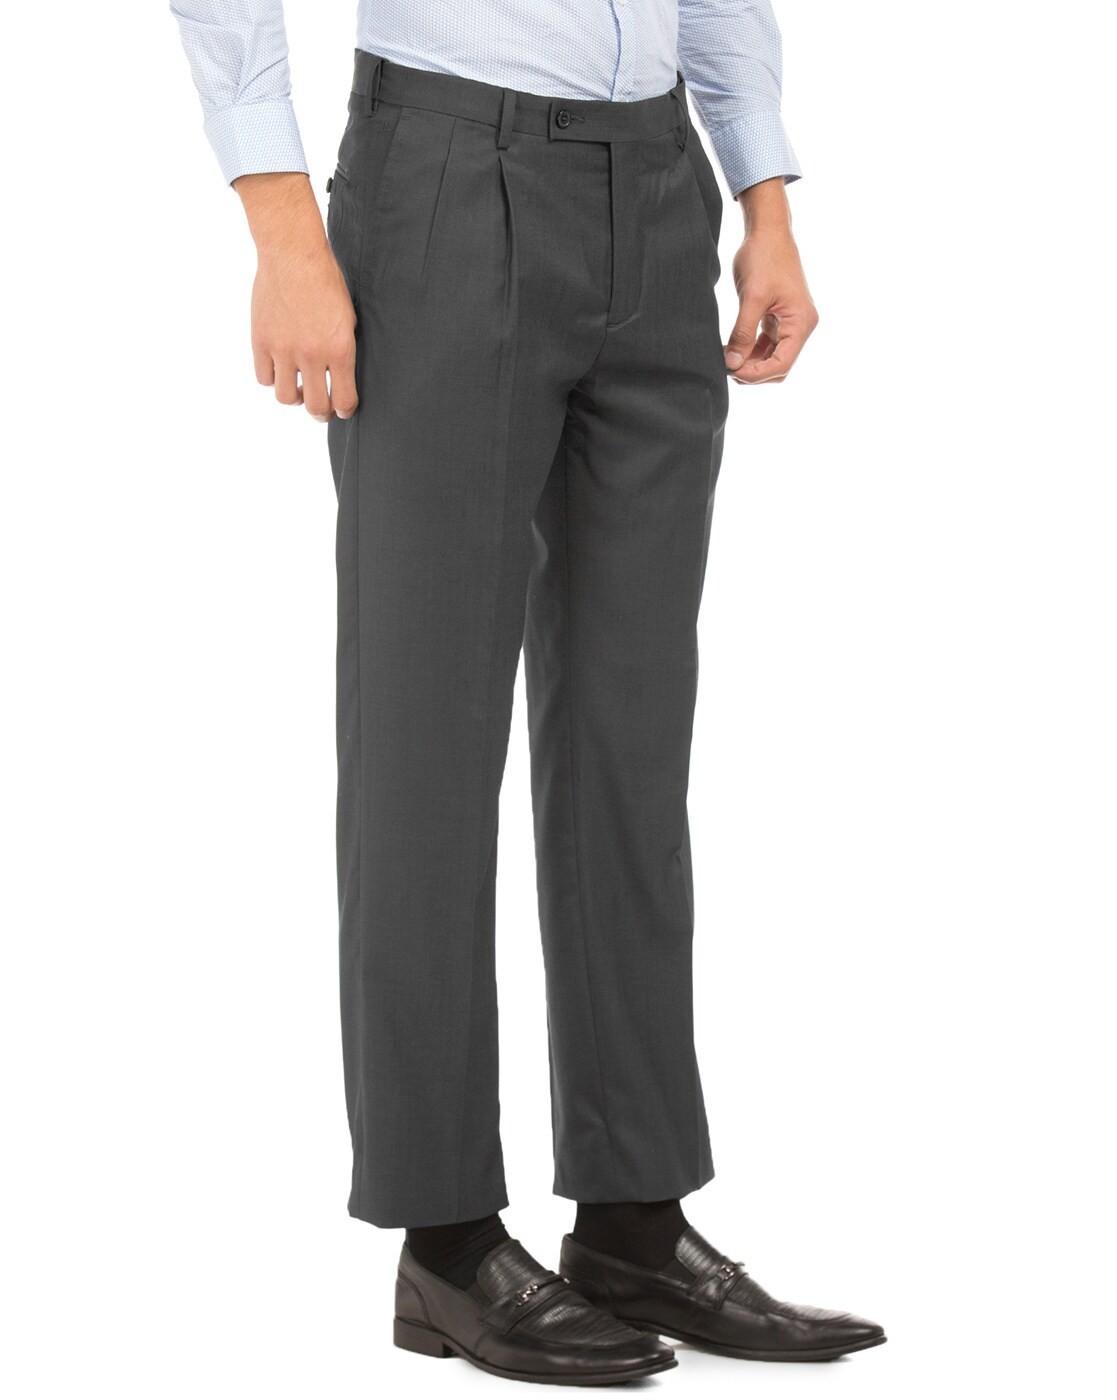 Buy Arrow Dark Brown Regular Fit Trousers for Mens Online  Tata CLiQ